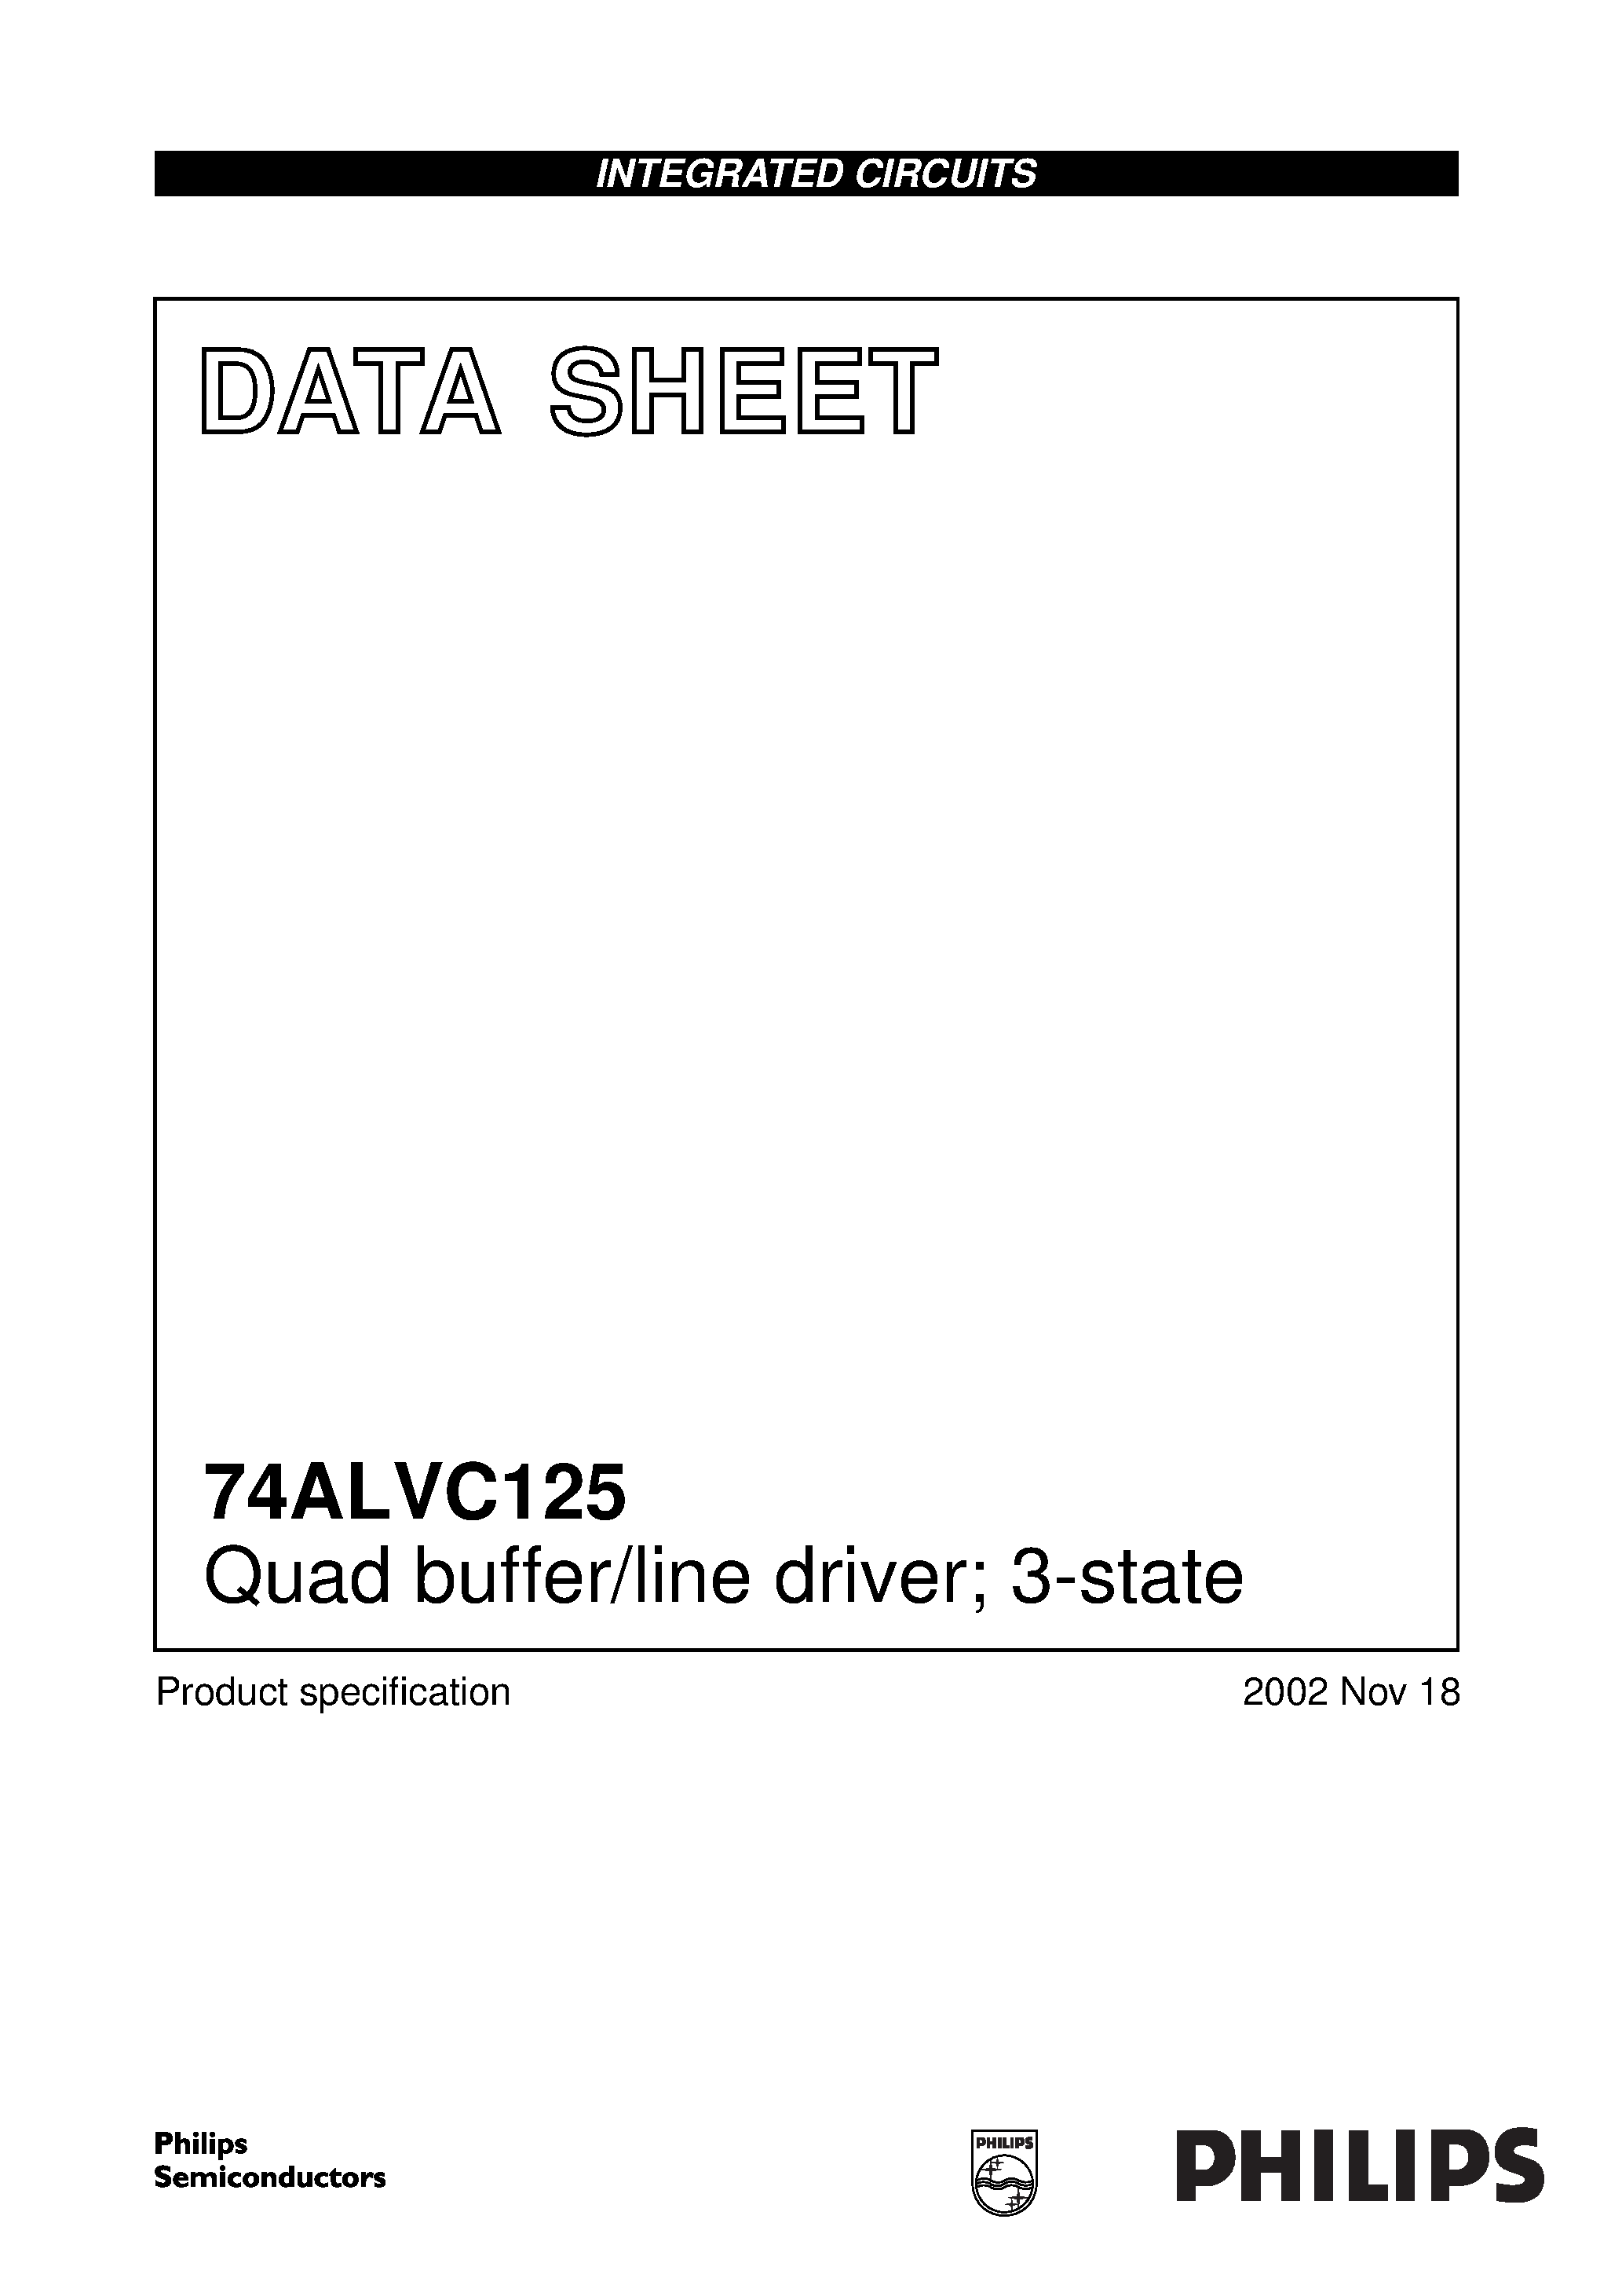 Даташит 74ALVC125PW - Quad buffer/line driver; 3-state страница 1